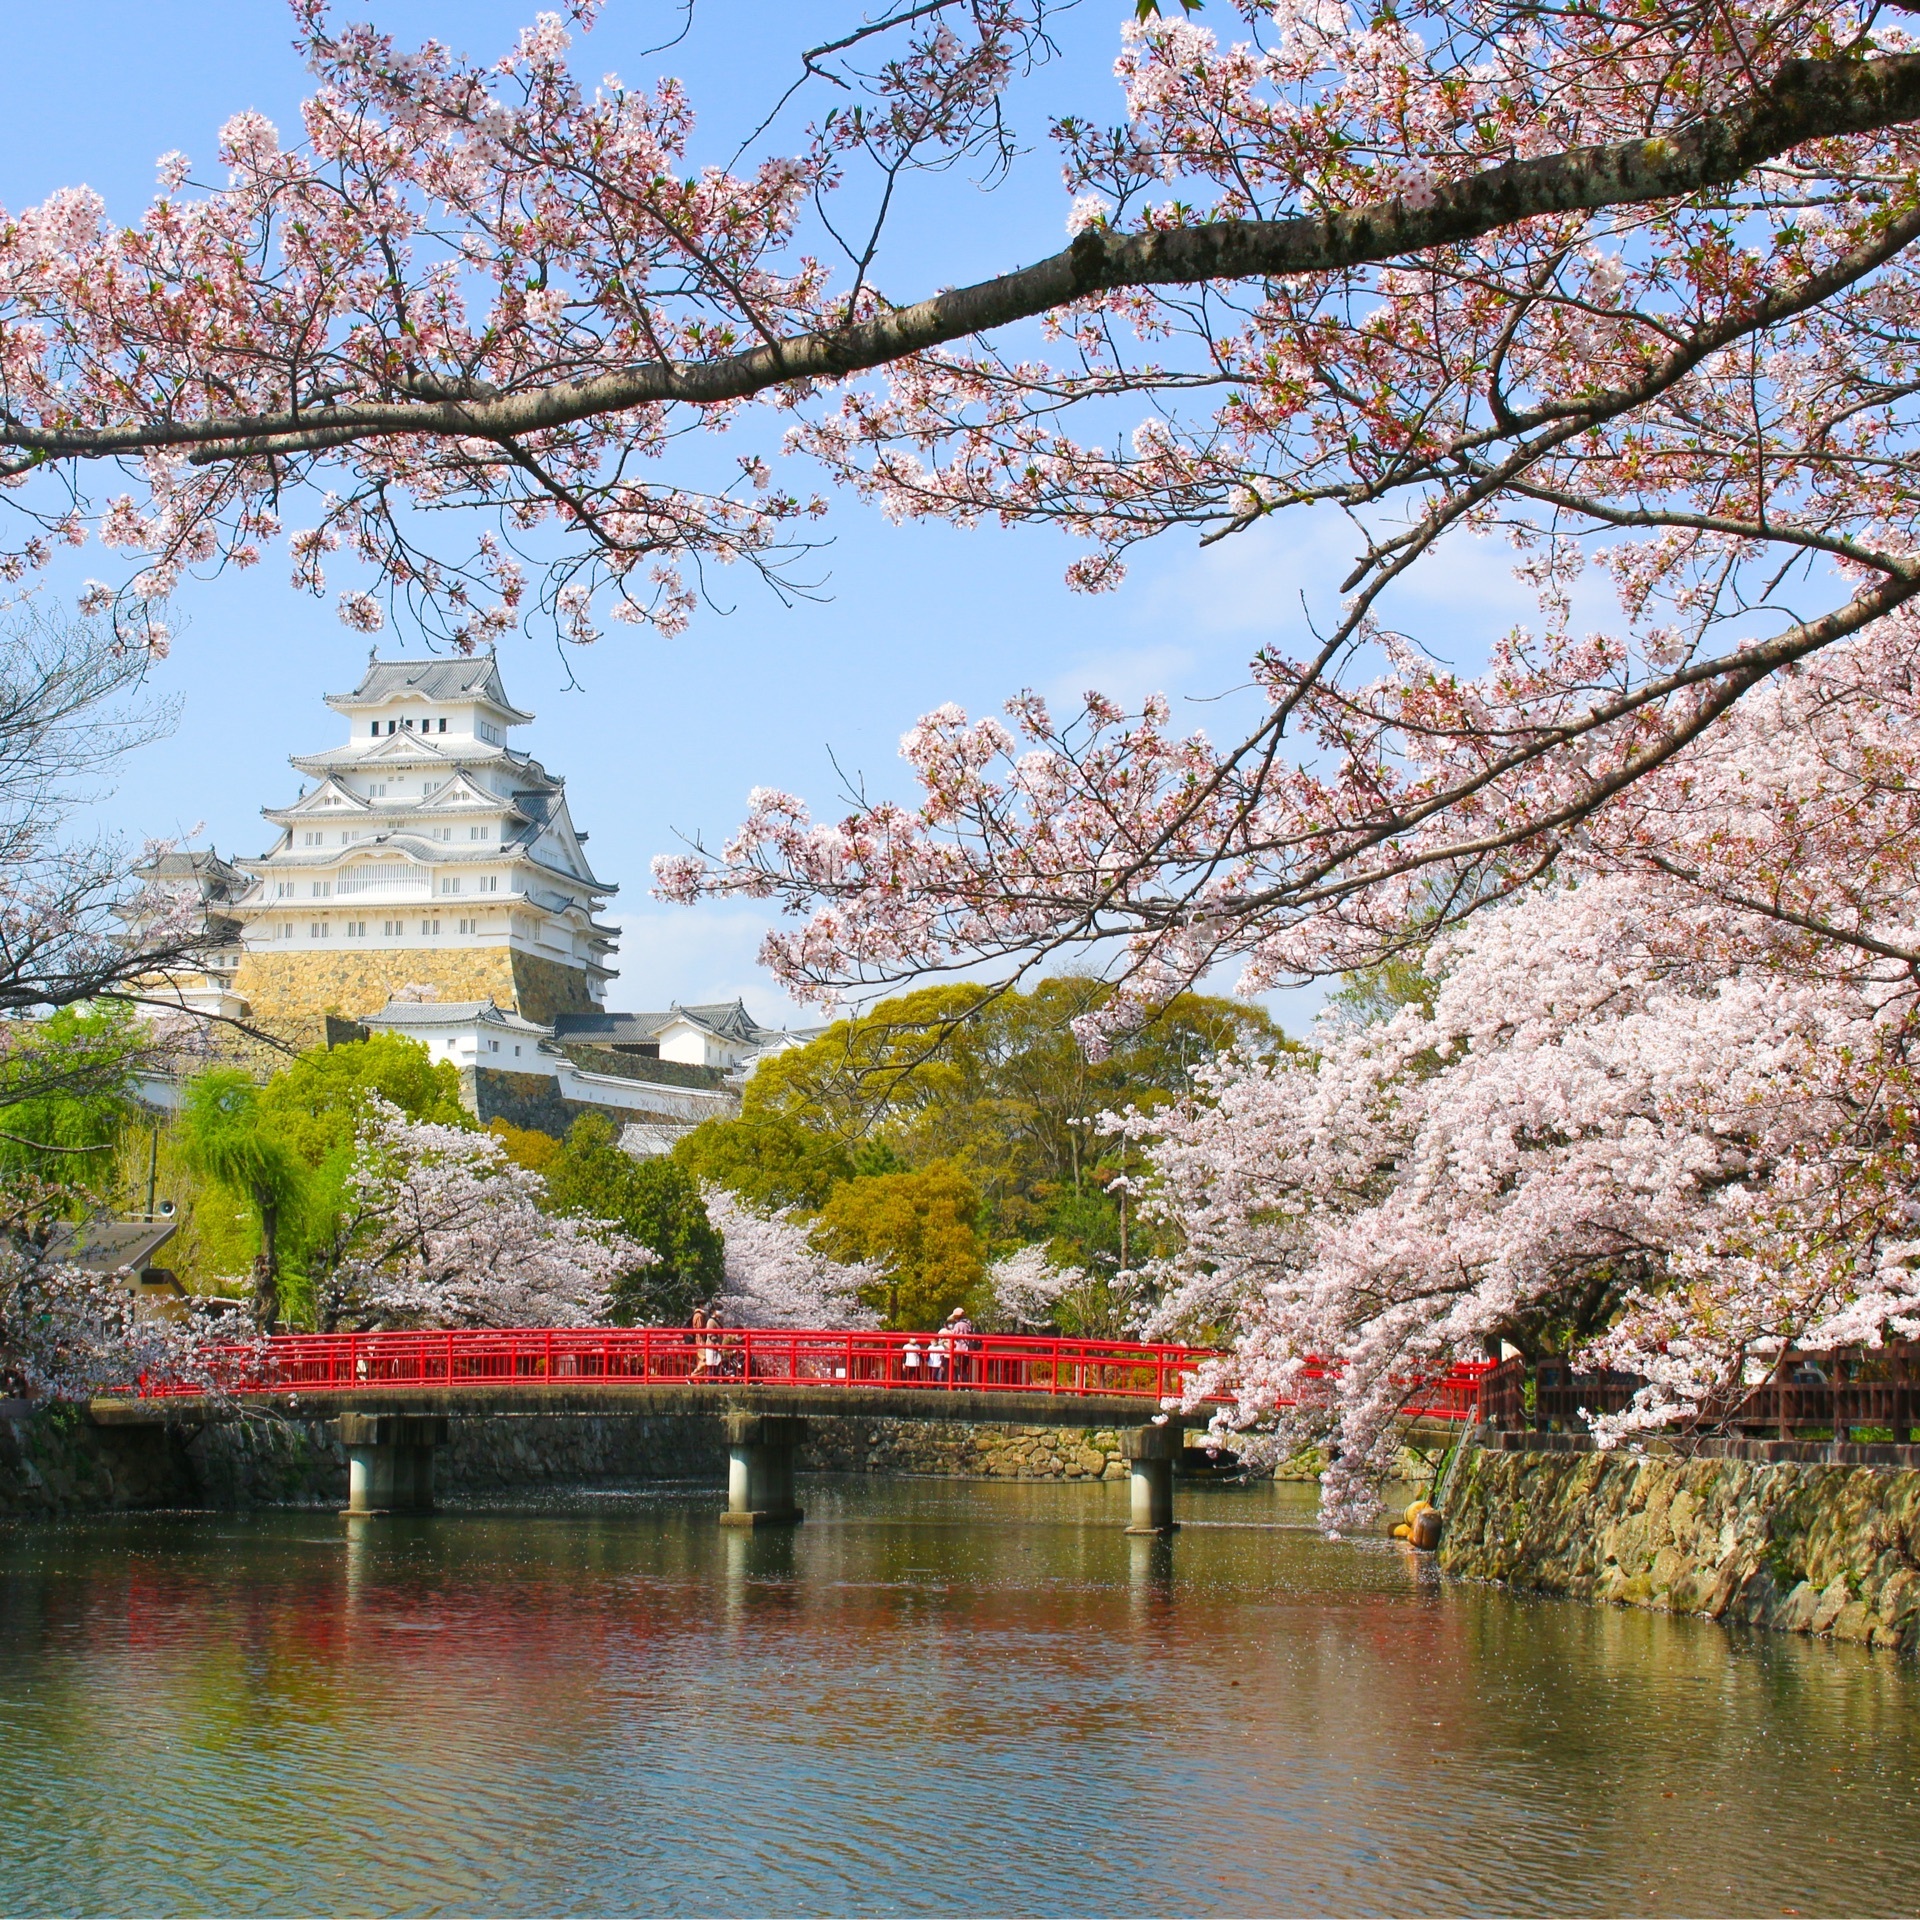 姫路城 白く輝く姫路のシンボル 400年以上の歴史を刻み現存し続ける世界遺産の名城 Recotrip レコトリップ